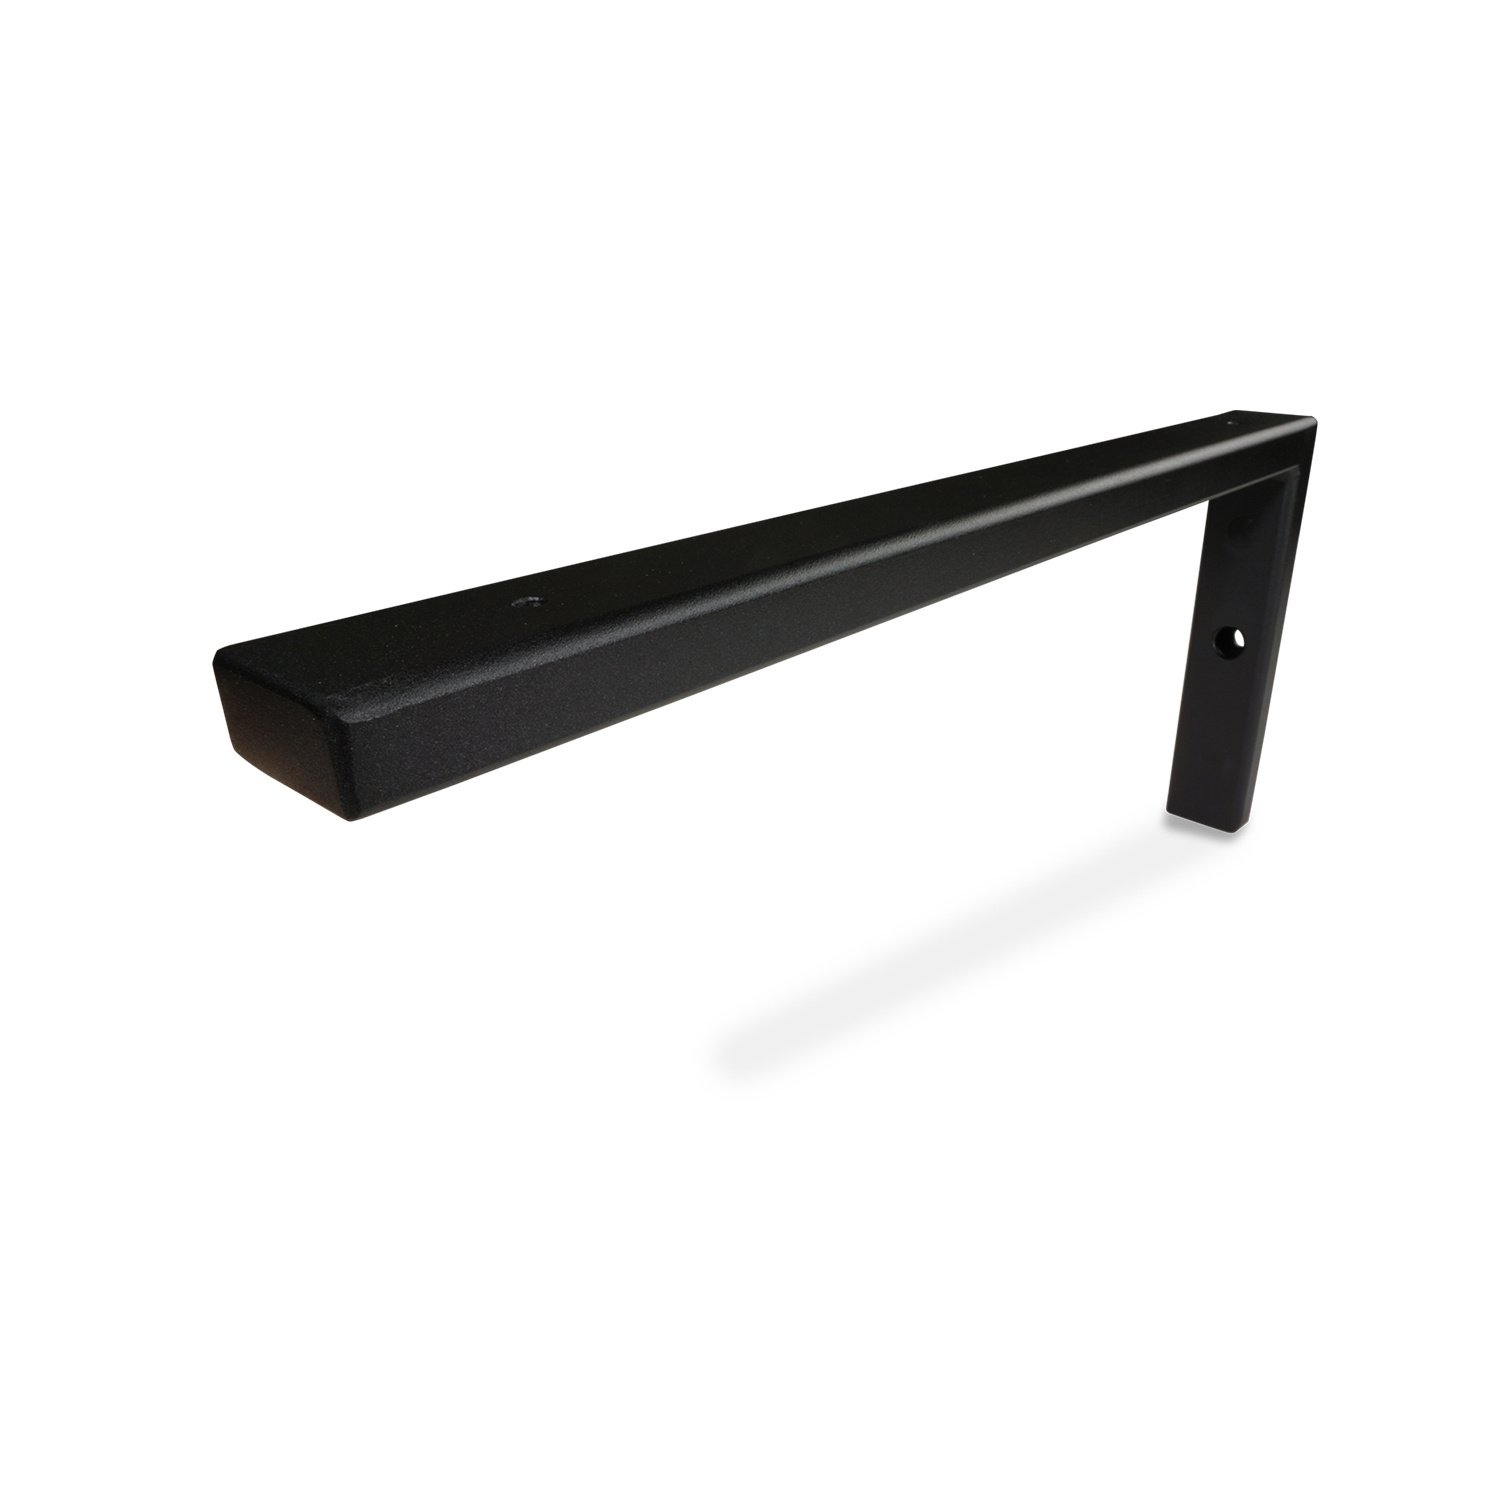  Stalen plankdrager L-vorm (SET) 20x10 cm - ZWART gecoat - 40x20x2 mm koker -  Schapdrager staal / metaal incl. poedercoating - Zwarte planksteun / plankhouder